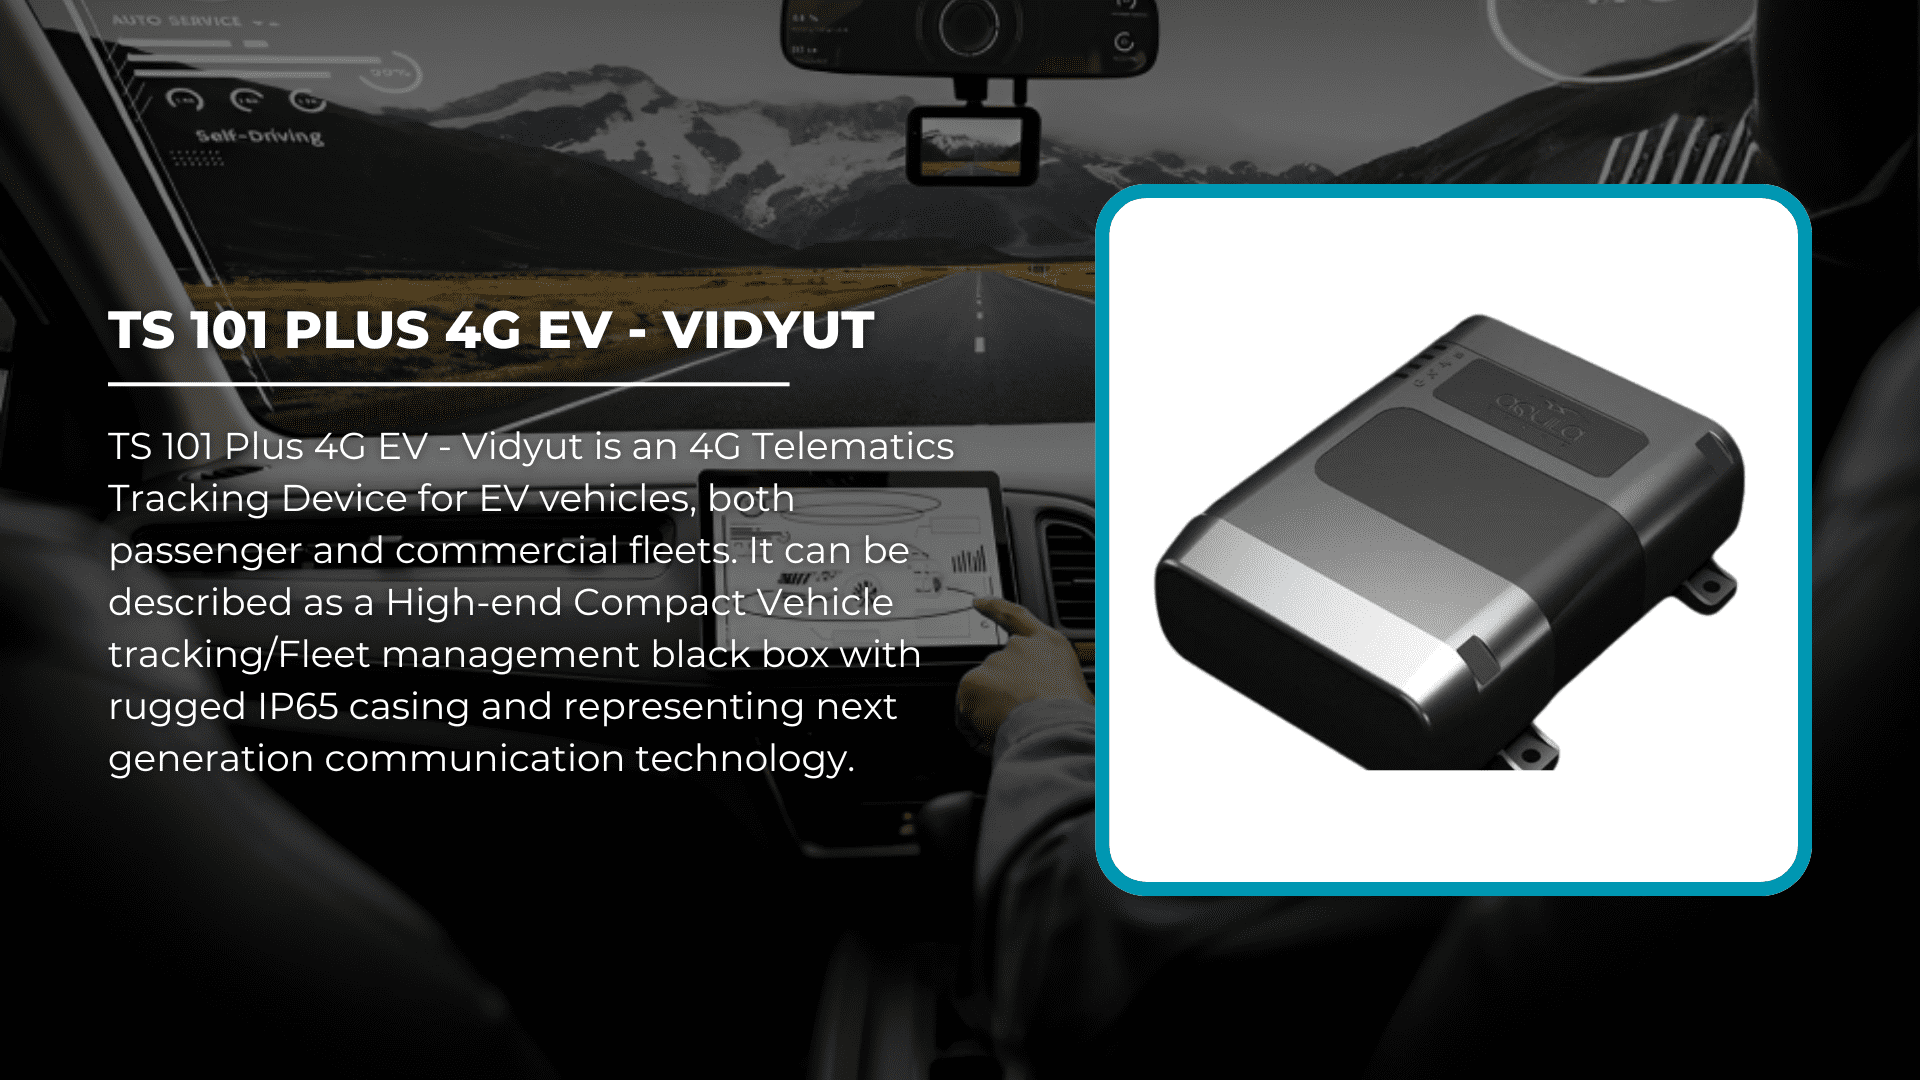 TS 101 Plus 4G EV - Vidyut